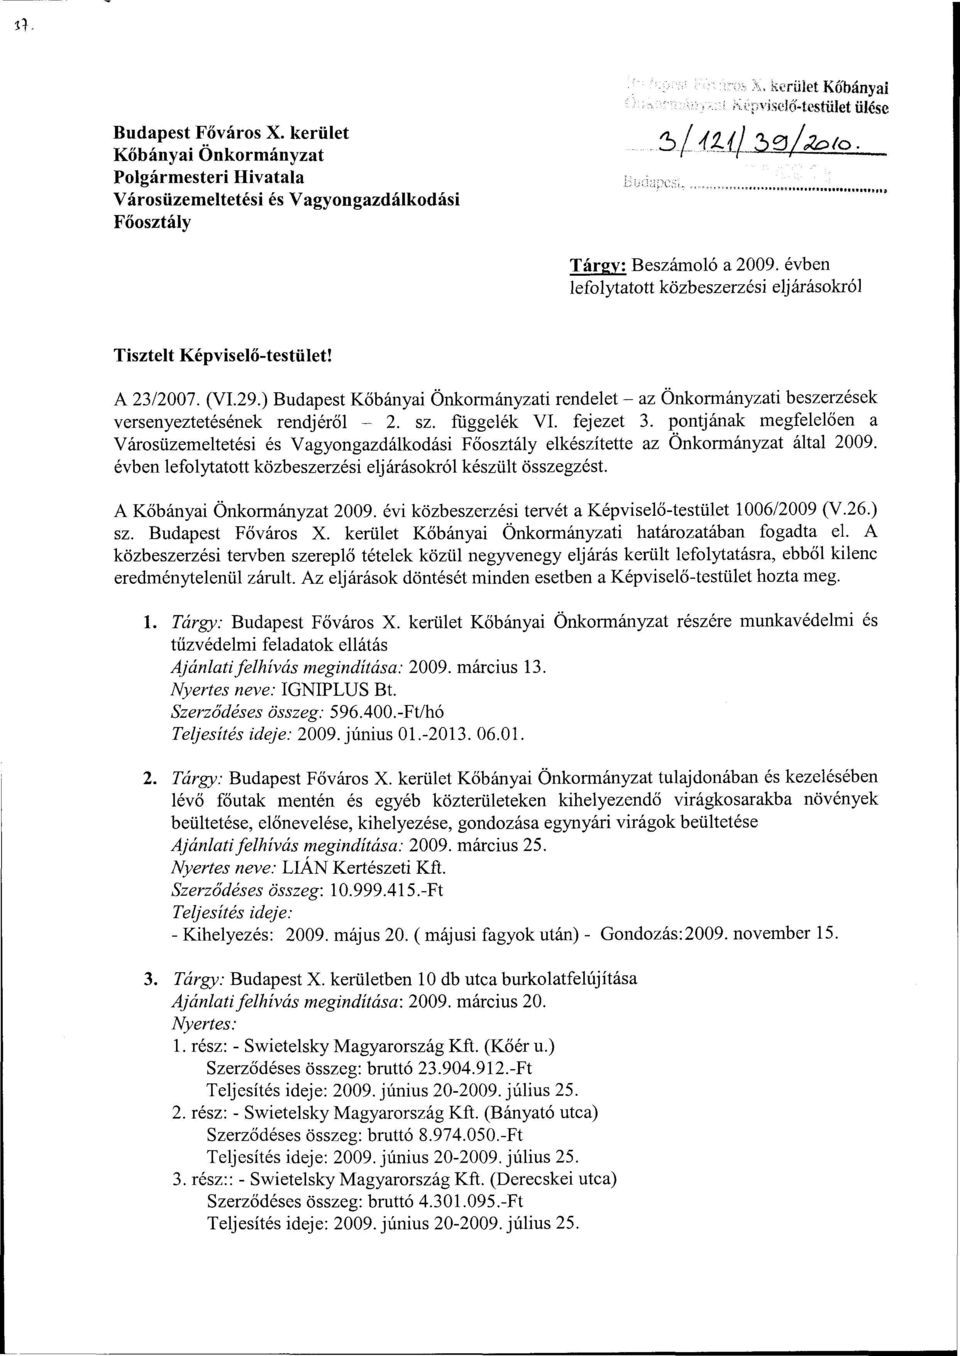 ) Budapest Kőbányai Önkormányzati rendelet - az Önkormányzati beszerzések versenyeztetésének rendjéről - 2. sz. függelék VI. fejezet 3.